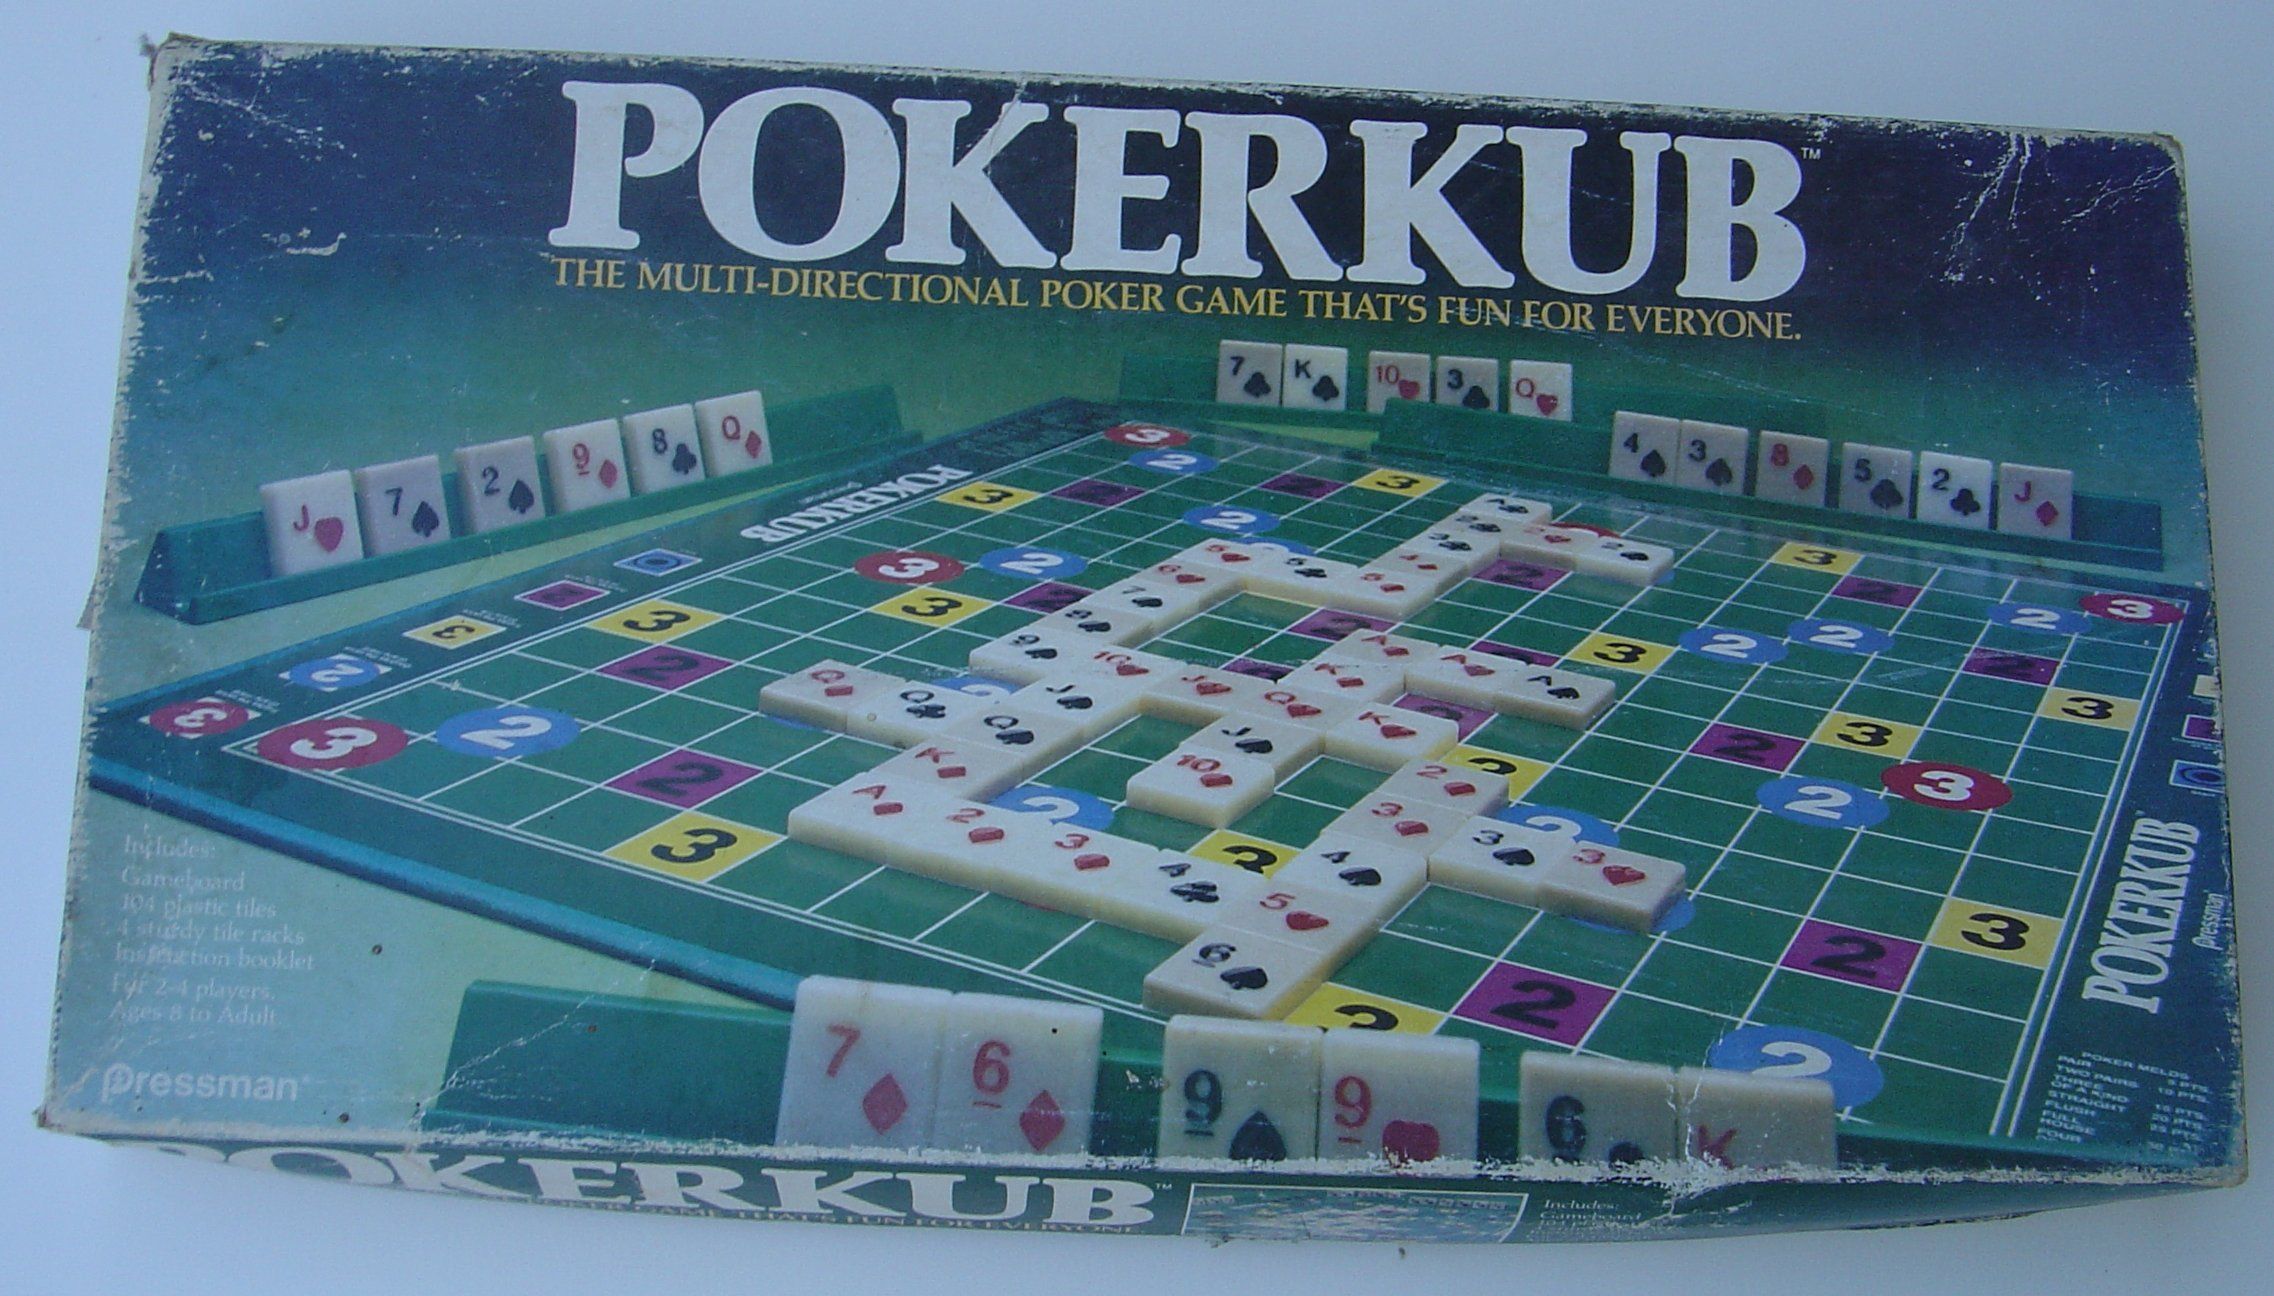 Pokerkub